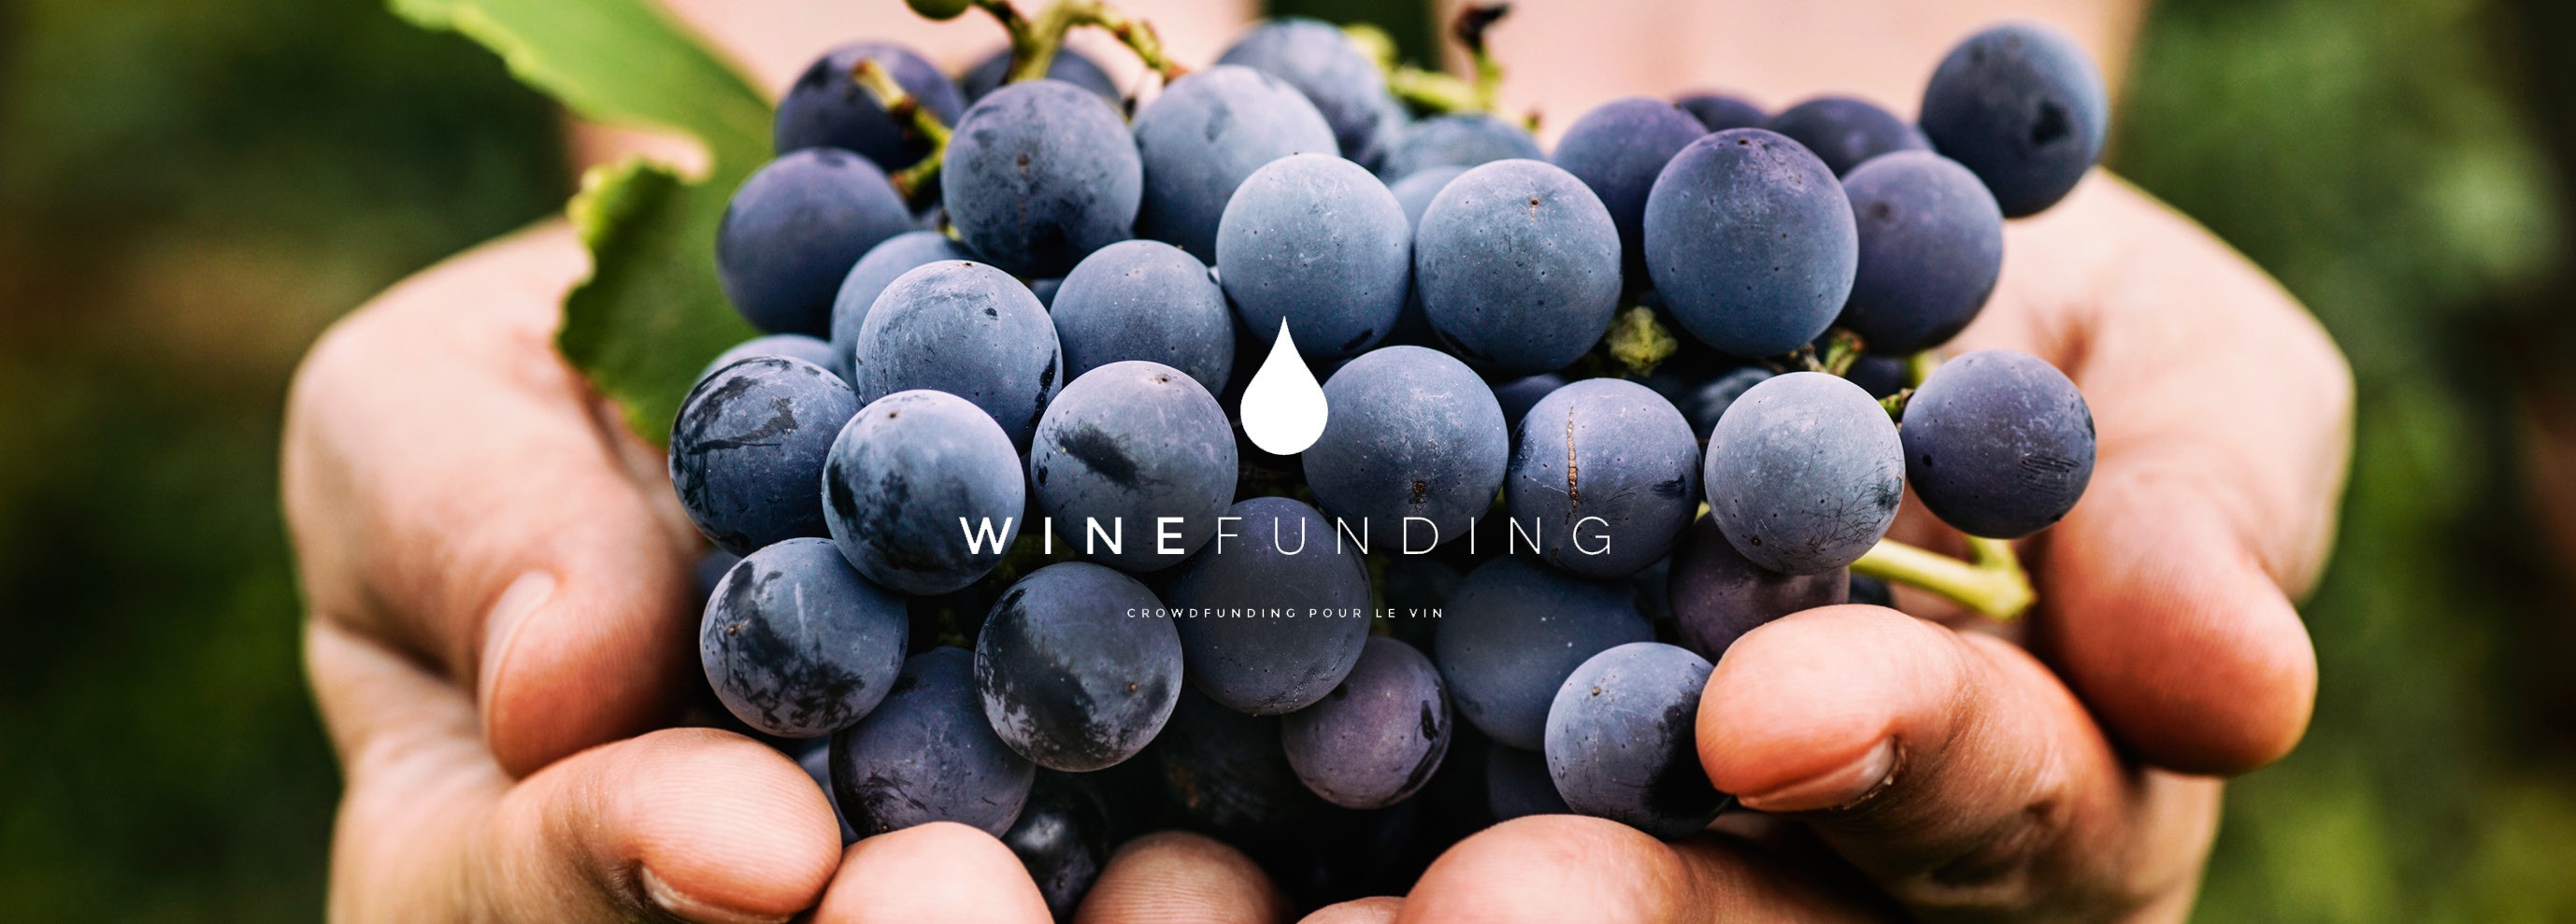 winefunding